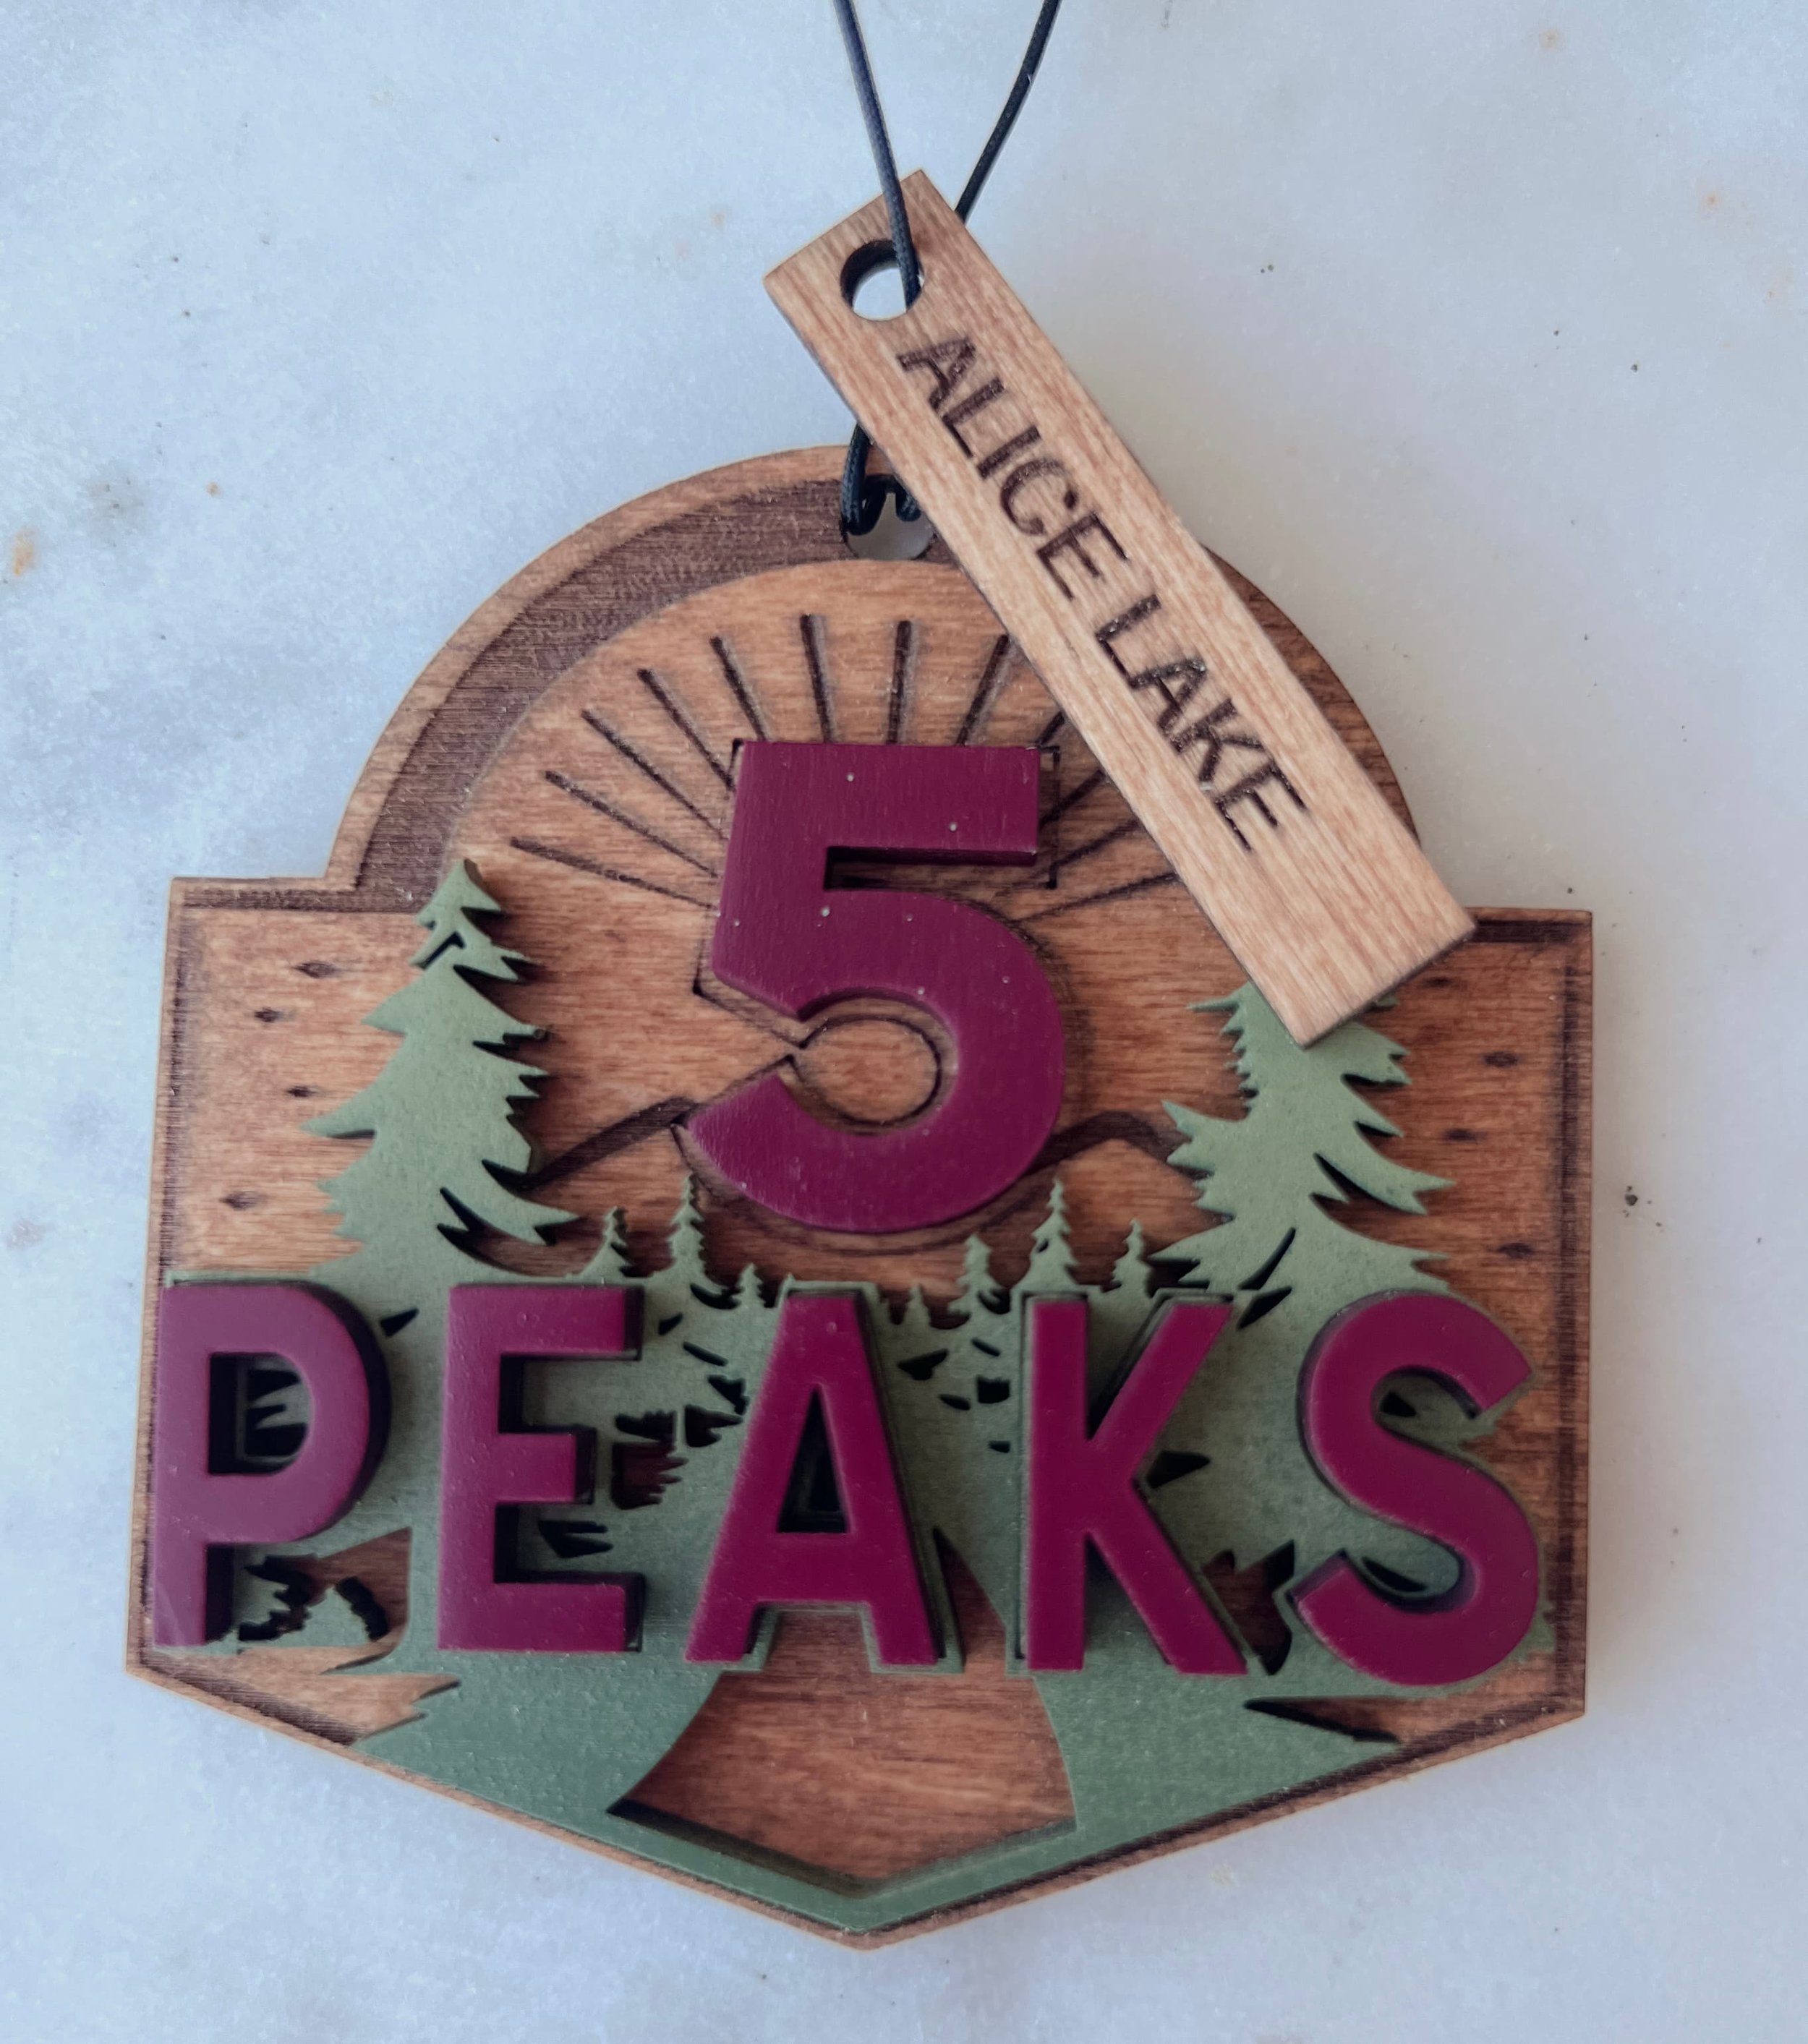 5 Peaks Medal Alice Lake Charm.jpeg